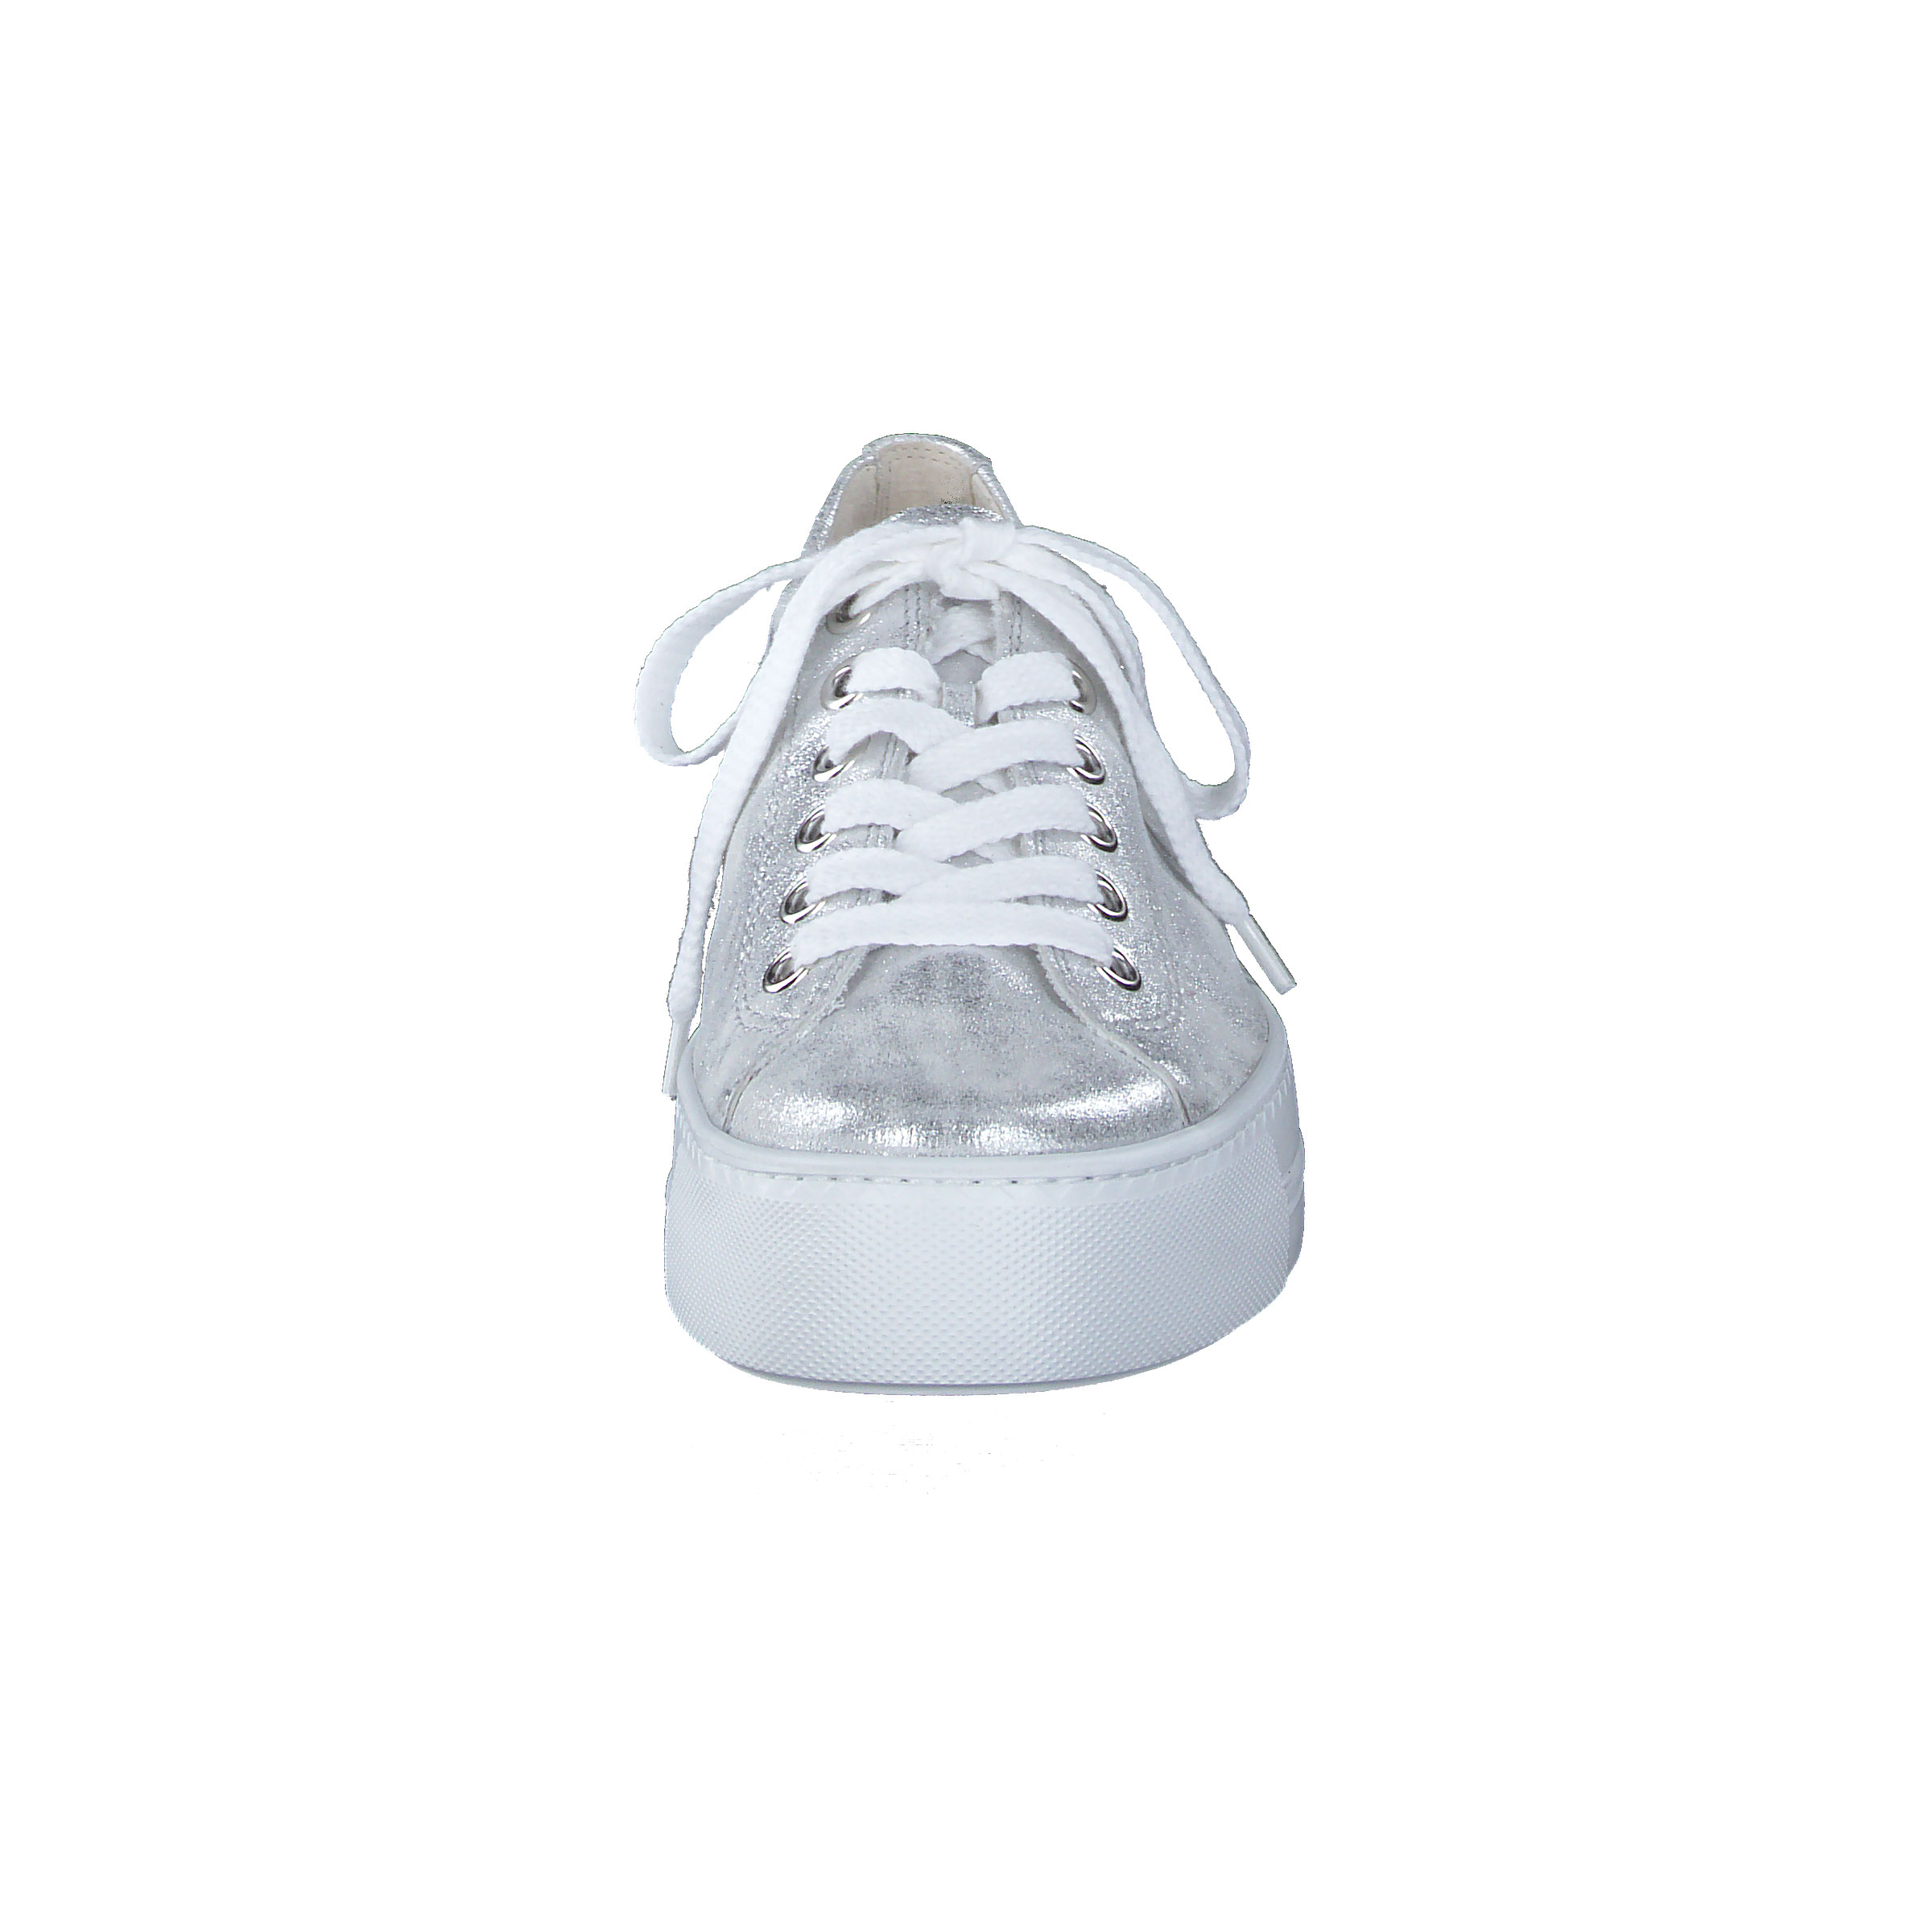 Paul Green Super Soft Pauls Sneaker - Silber Metallic Glattleder